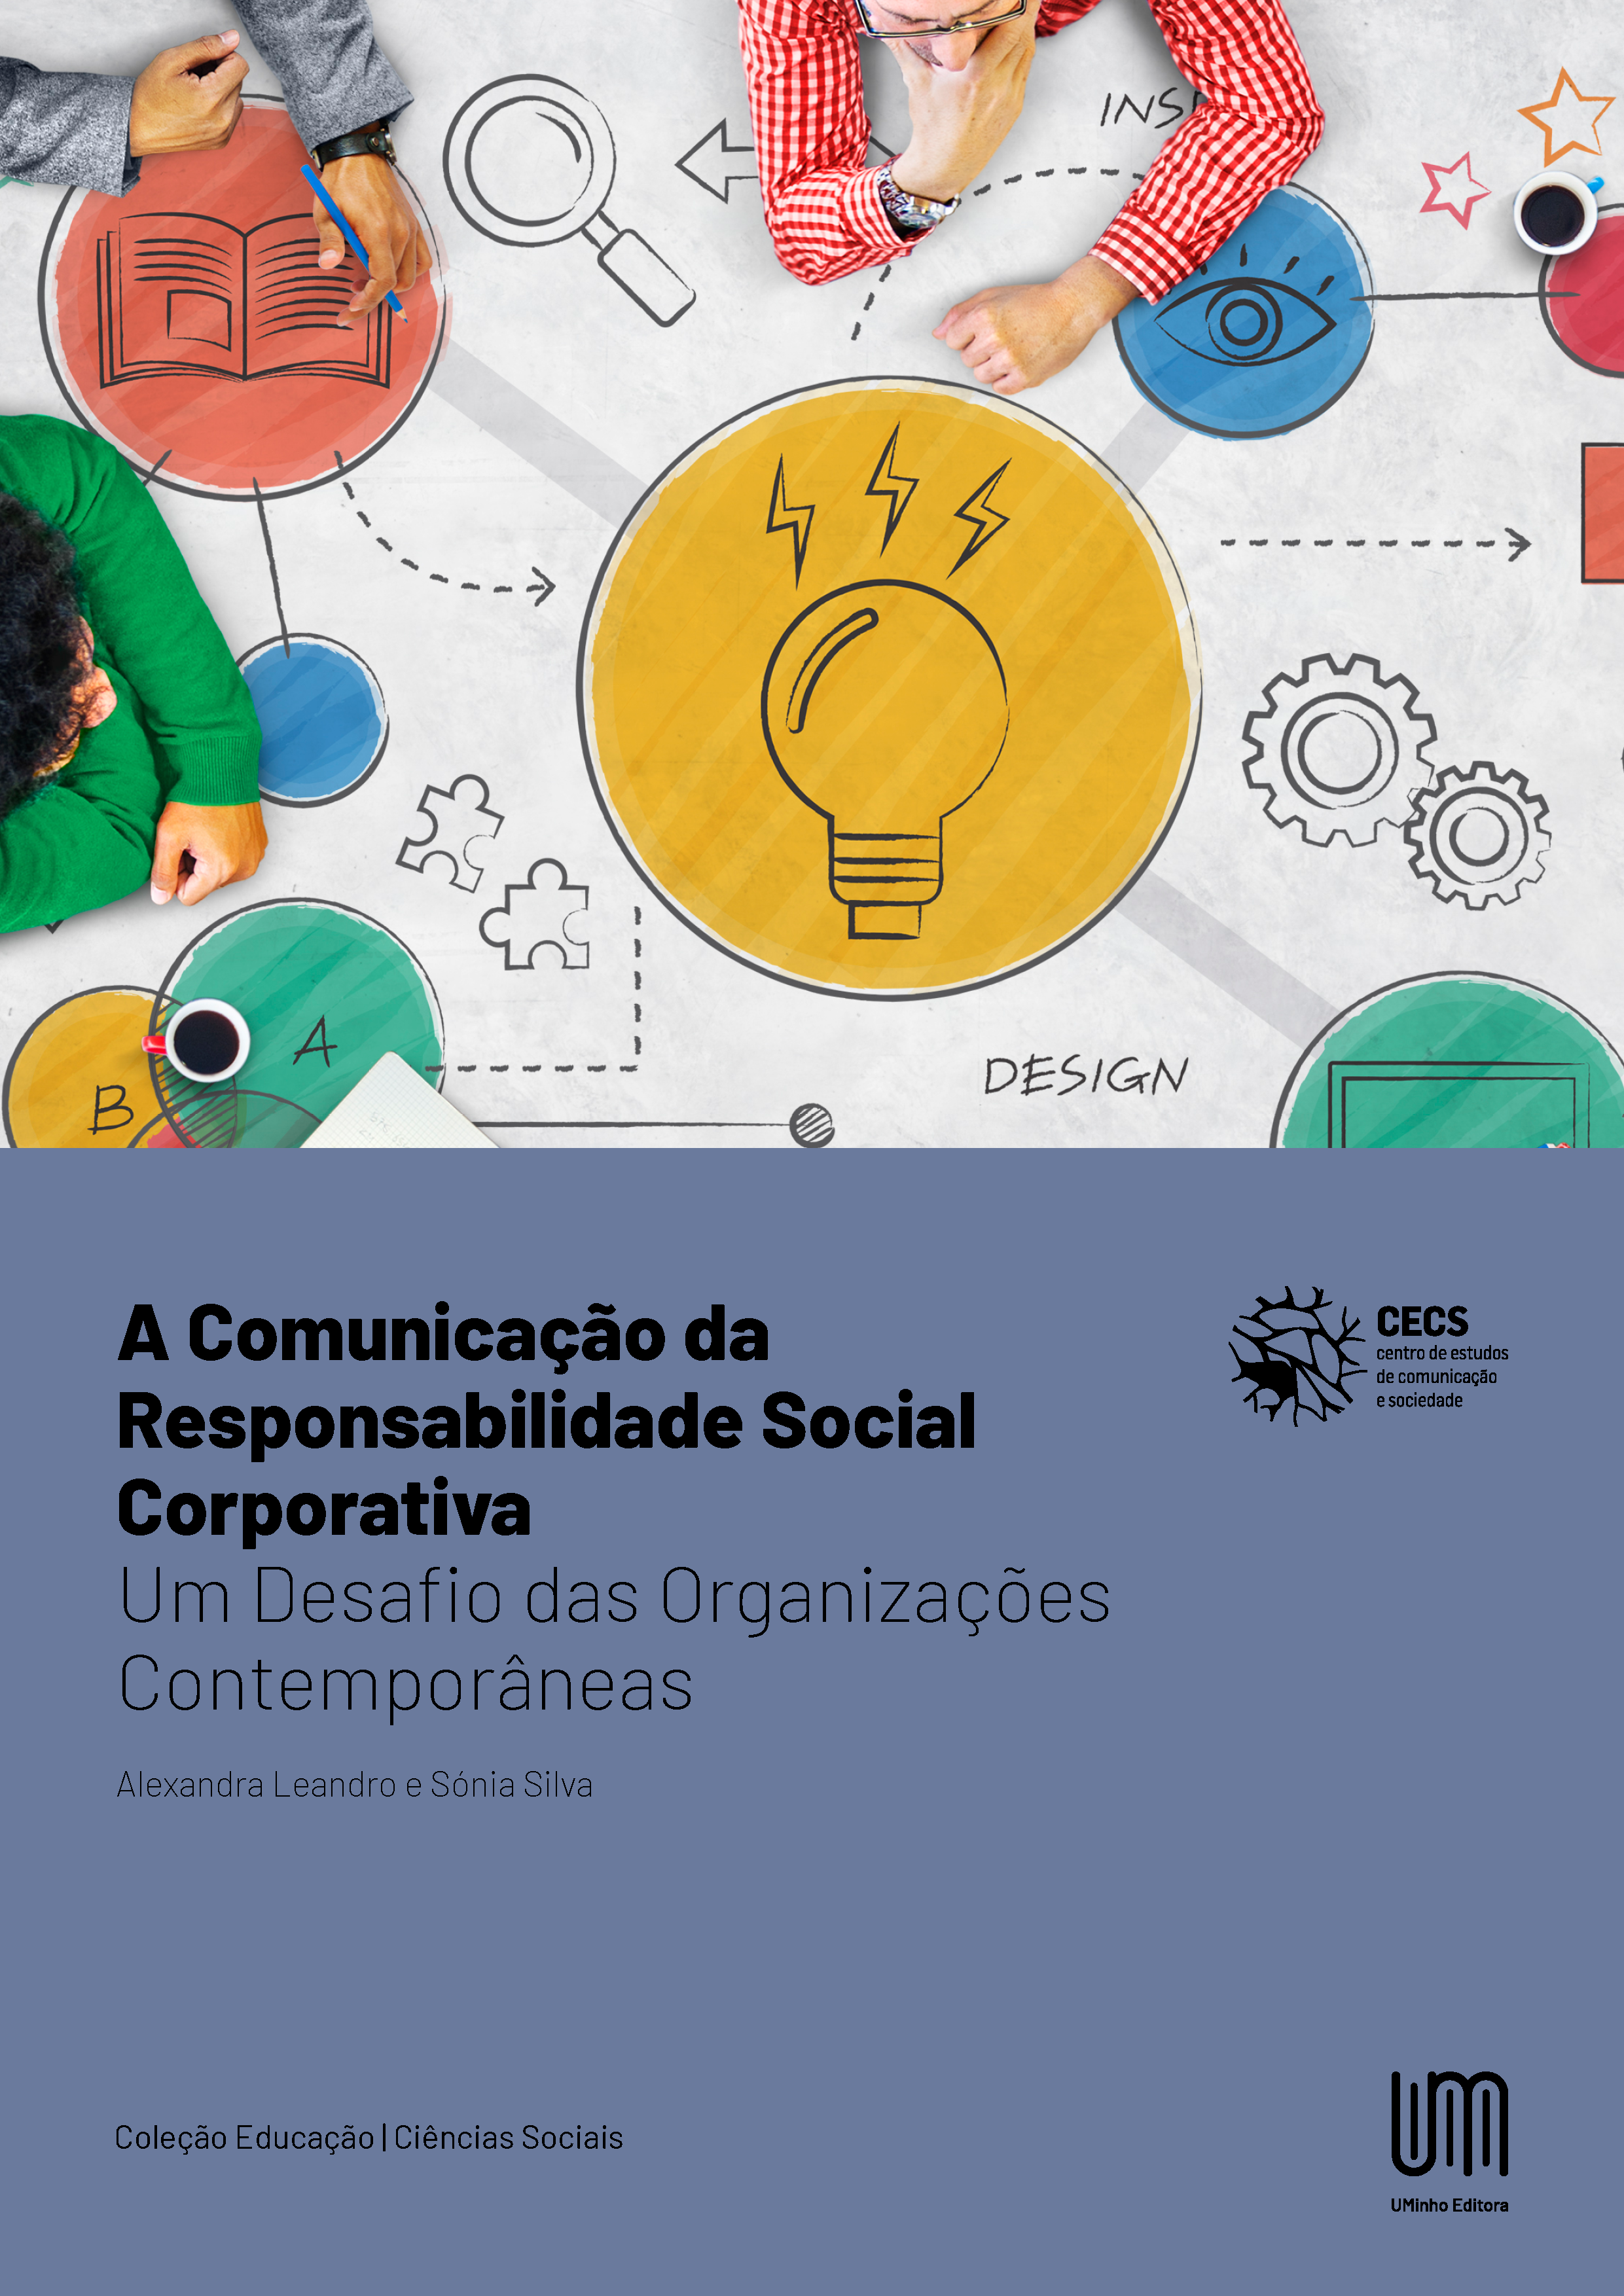 A Comunicação da Responsabilidade Social Corporativa: Um Desafio das Organizações Contemporâneas - UMinho Editora